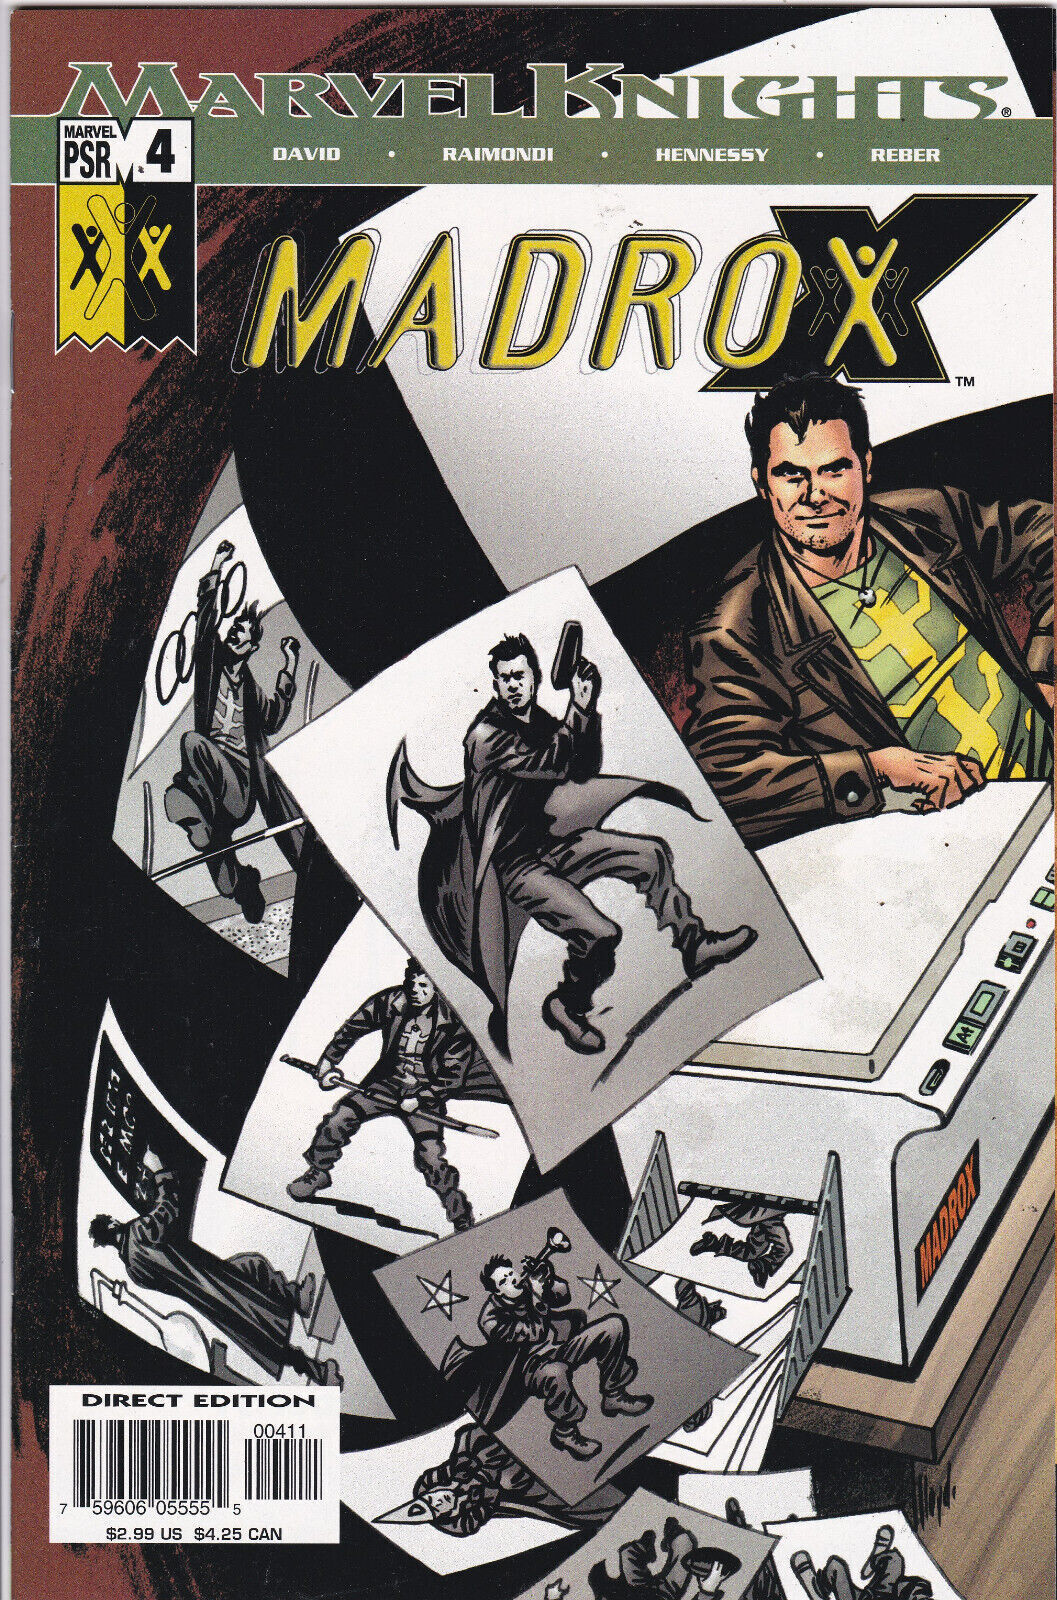 Madrox #4 (2004-2005) Marvel Knights, High Grade, Original Owner